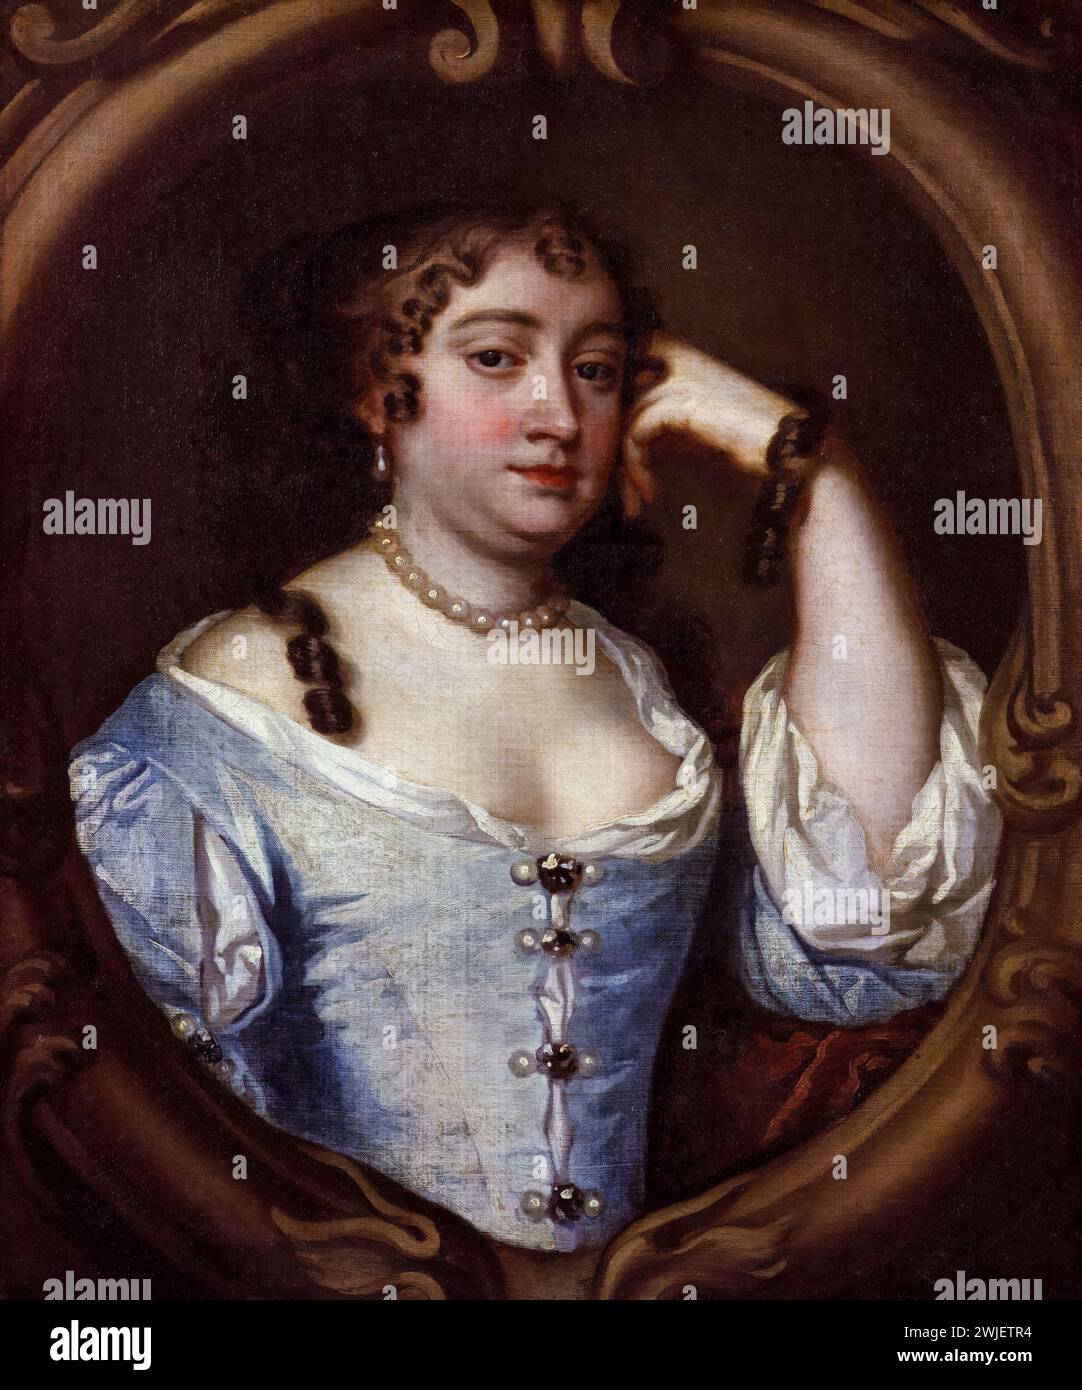 Anne Hyde (1637-1671), duquesa de York. Primera esposa del rey Santiago II y VII, pintura de retrato al óleo sobre lienzo después de Sir Peter Lely, hacia 1670 Foto de stock